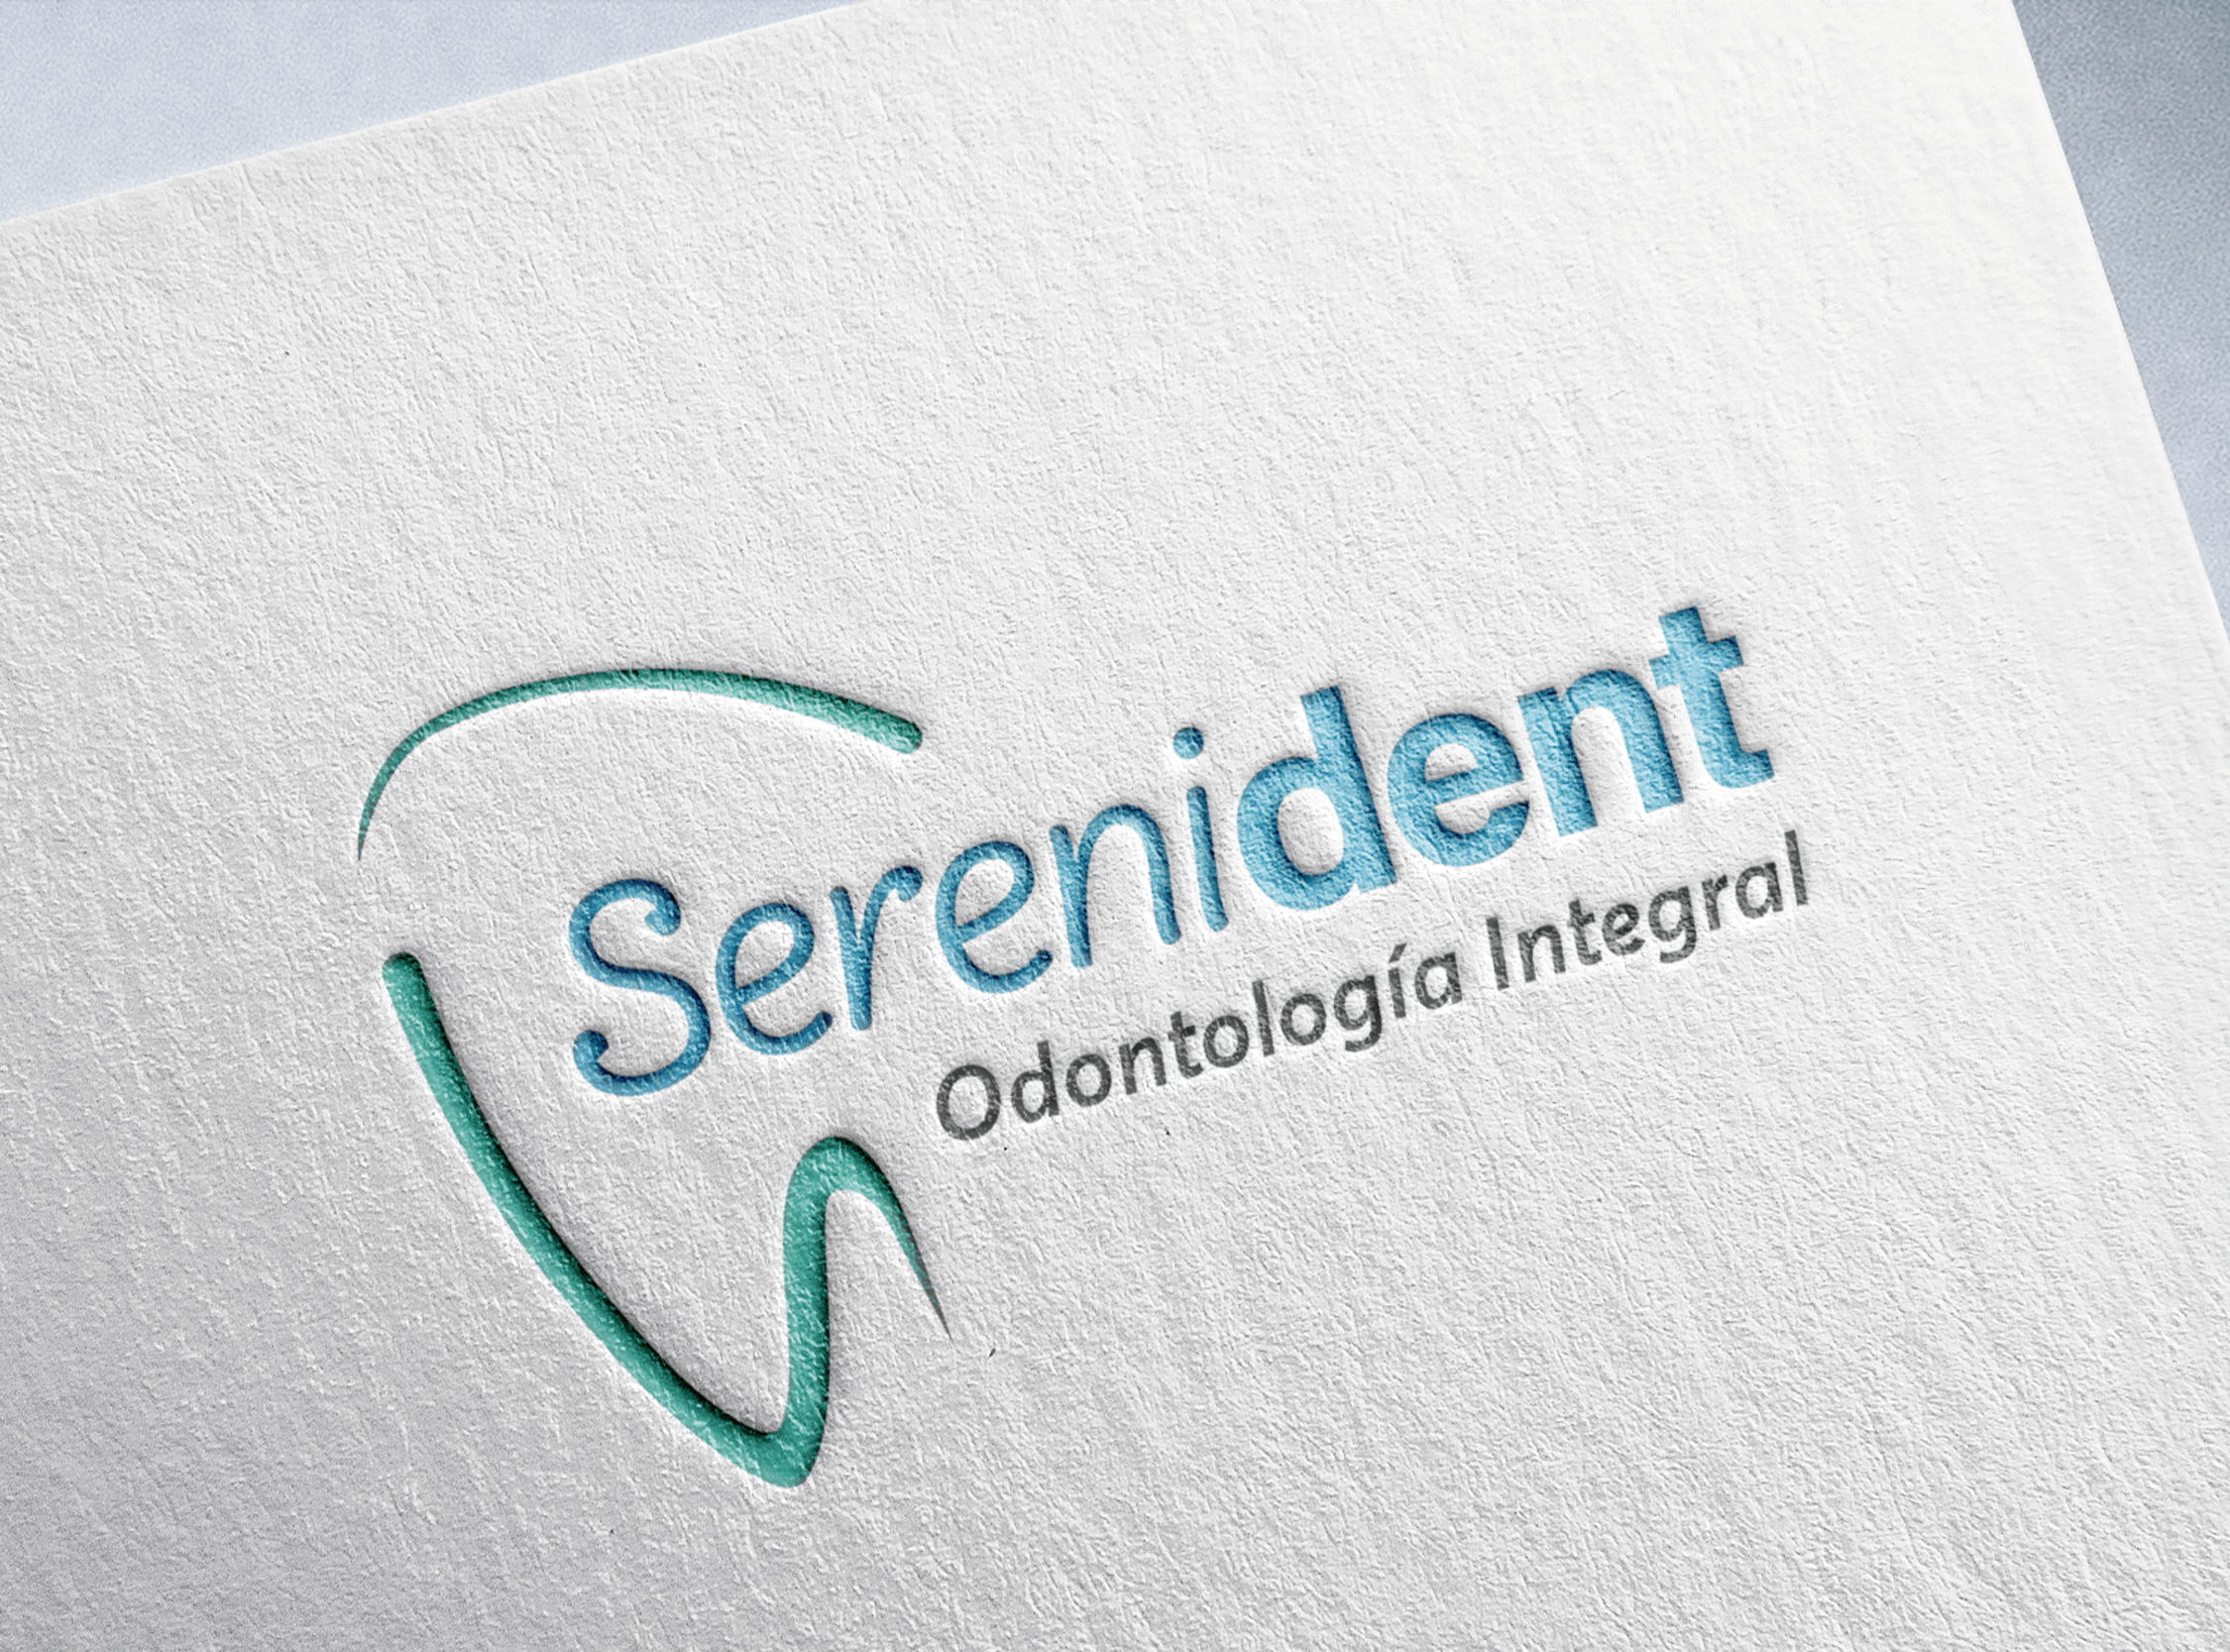 Serenident-03